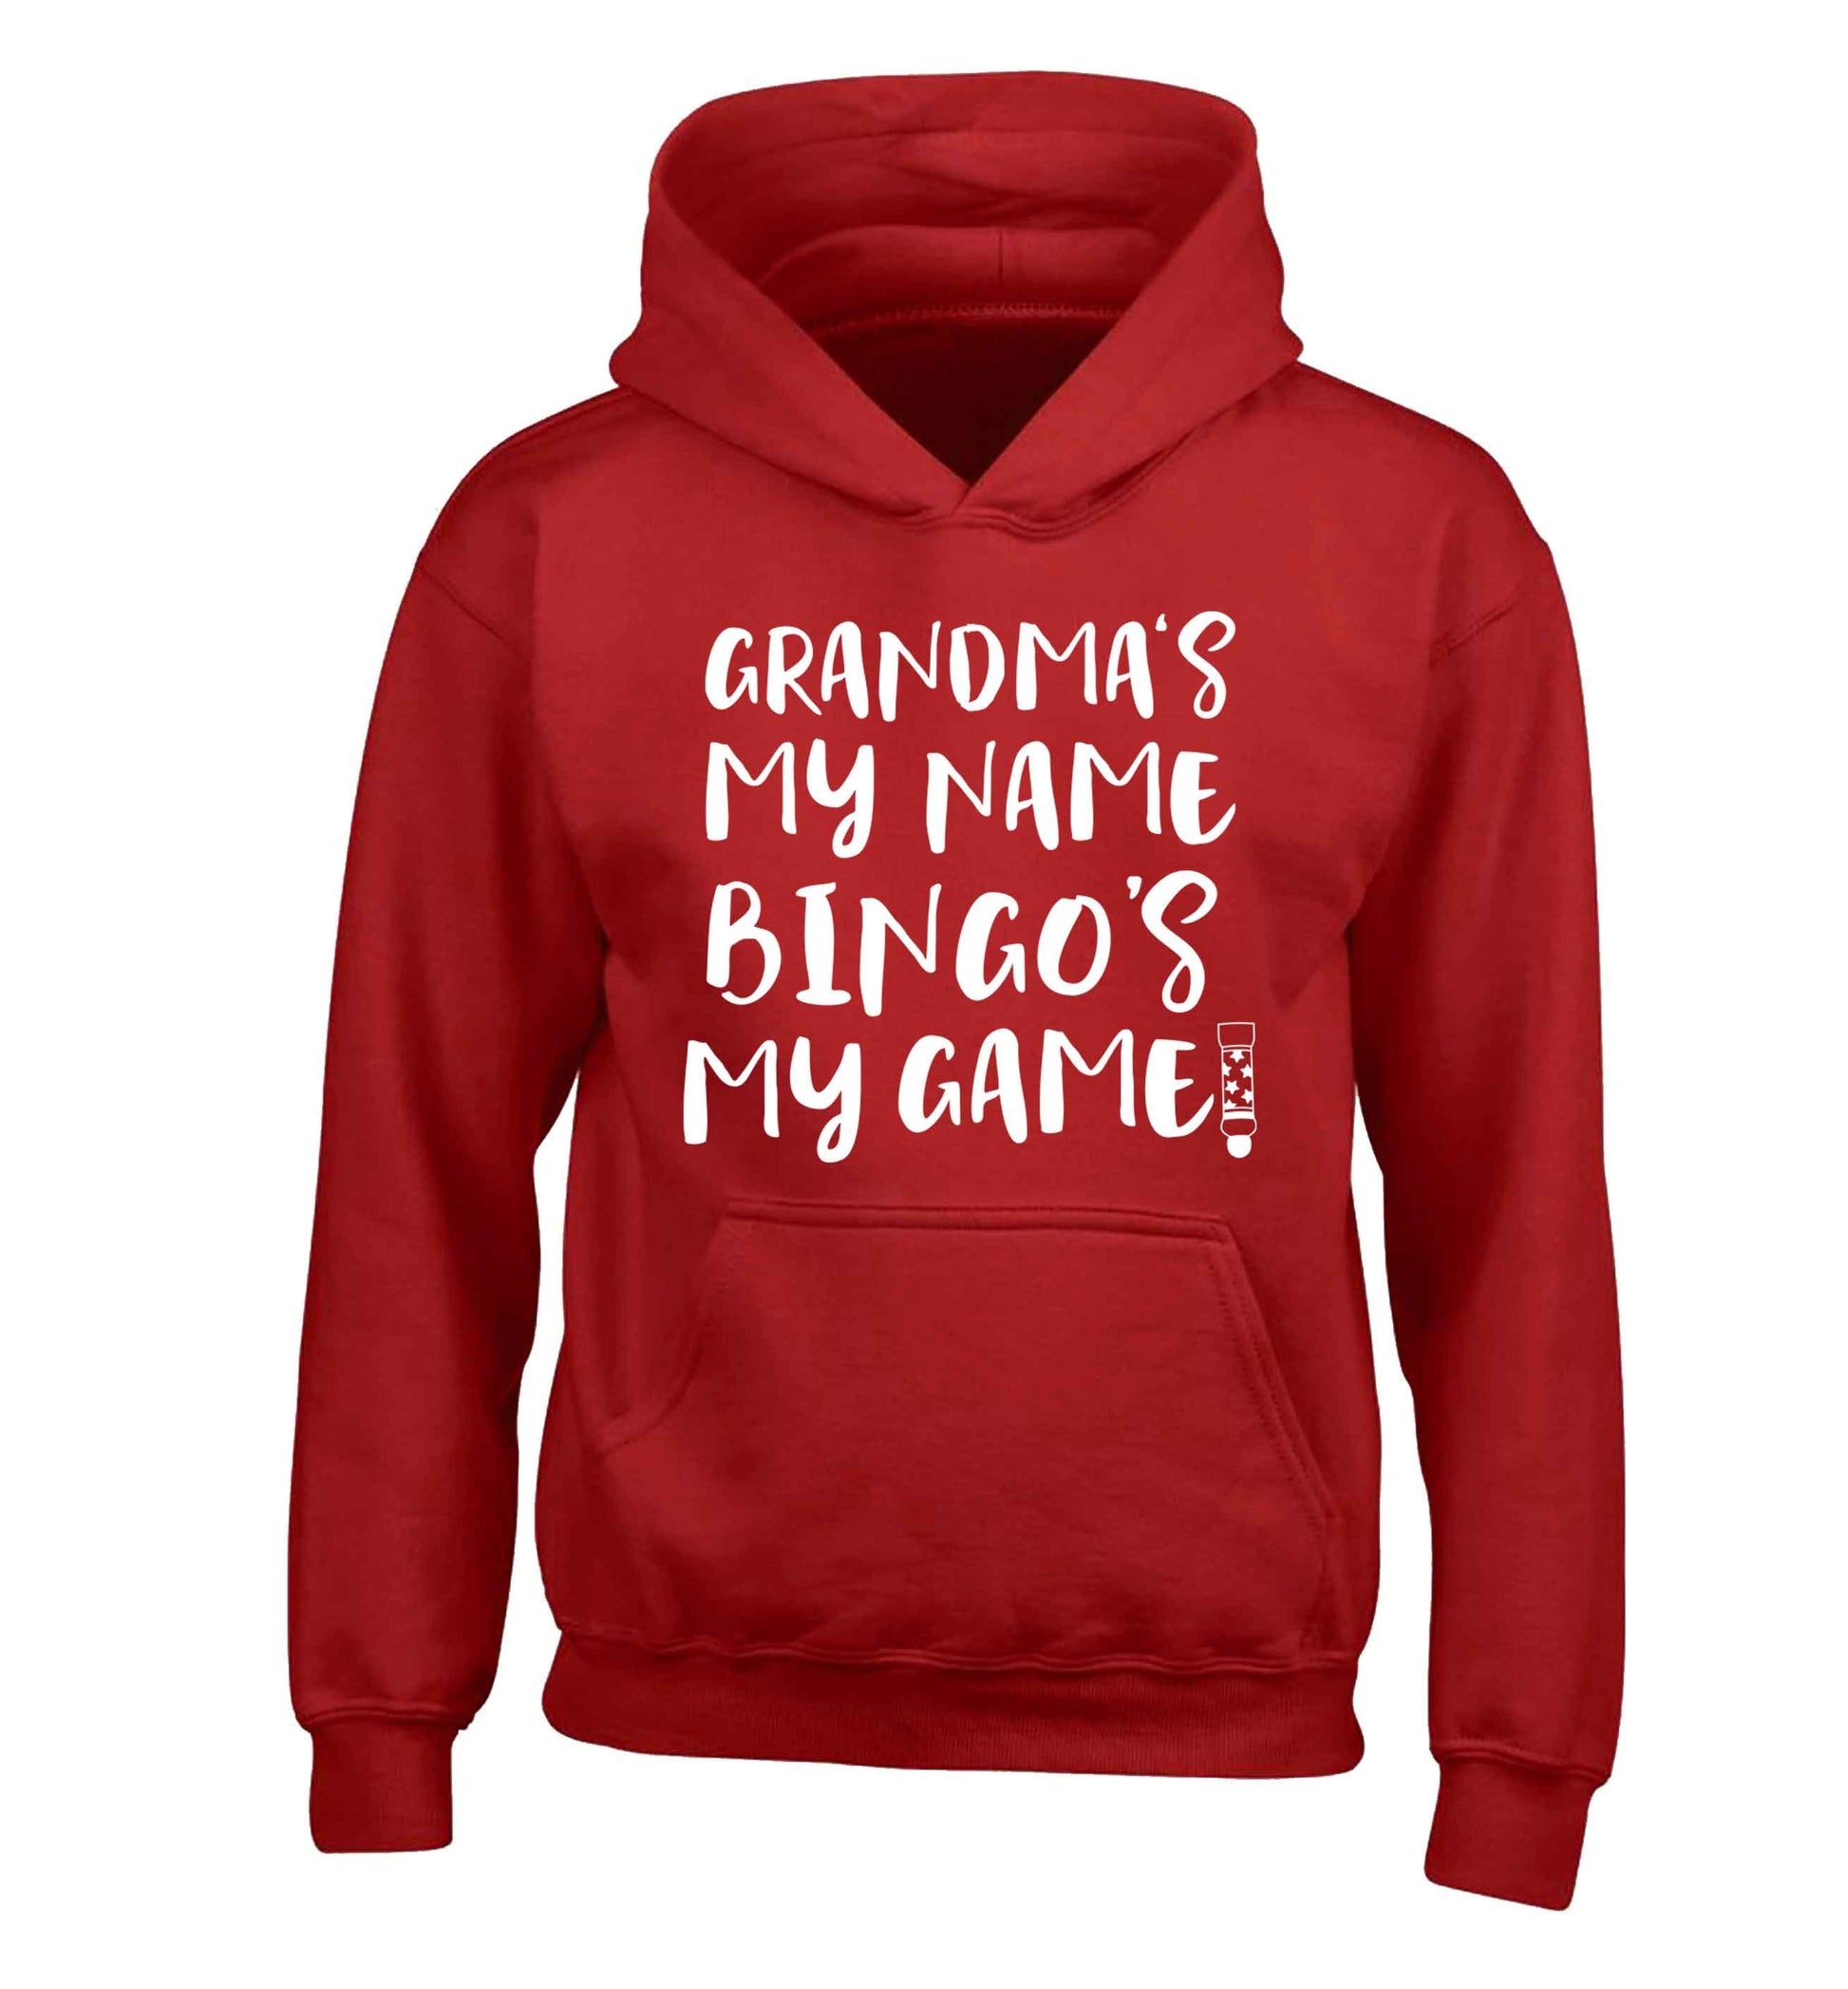 Grandma's my name bingo's my game! children's red hoodie 12-13 Years